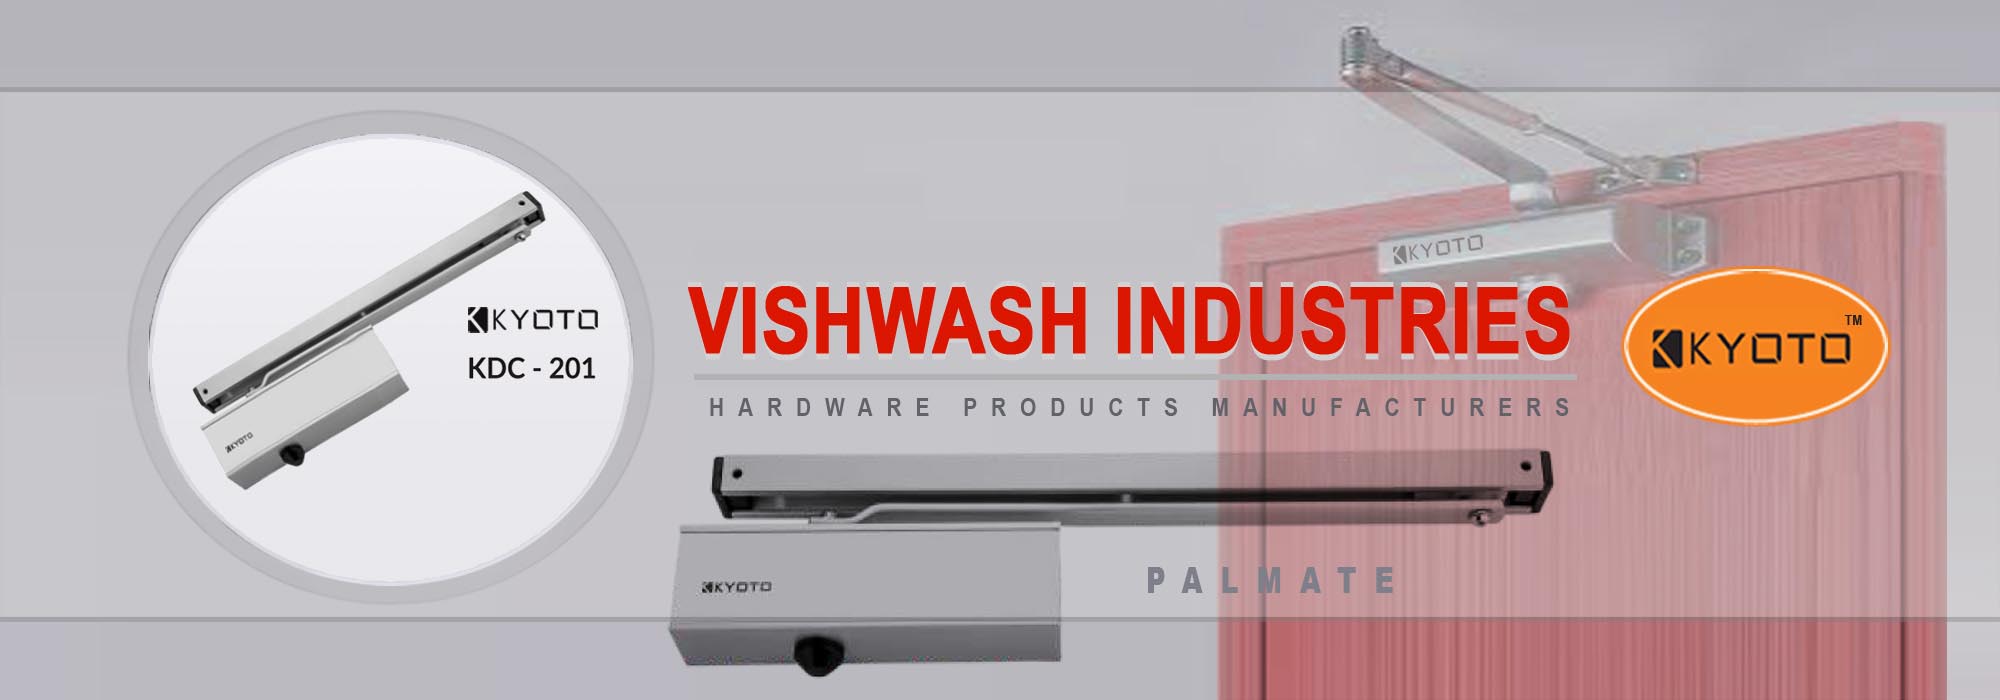 Vishwash Industries Kyoto Brand Door Closer Manufacturers Rajkot